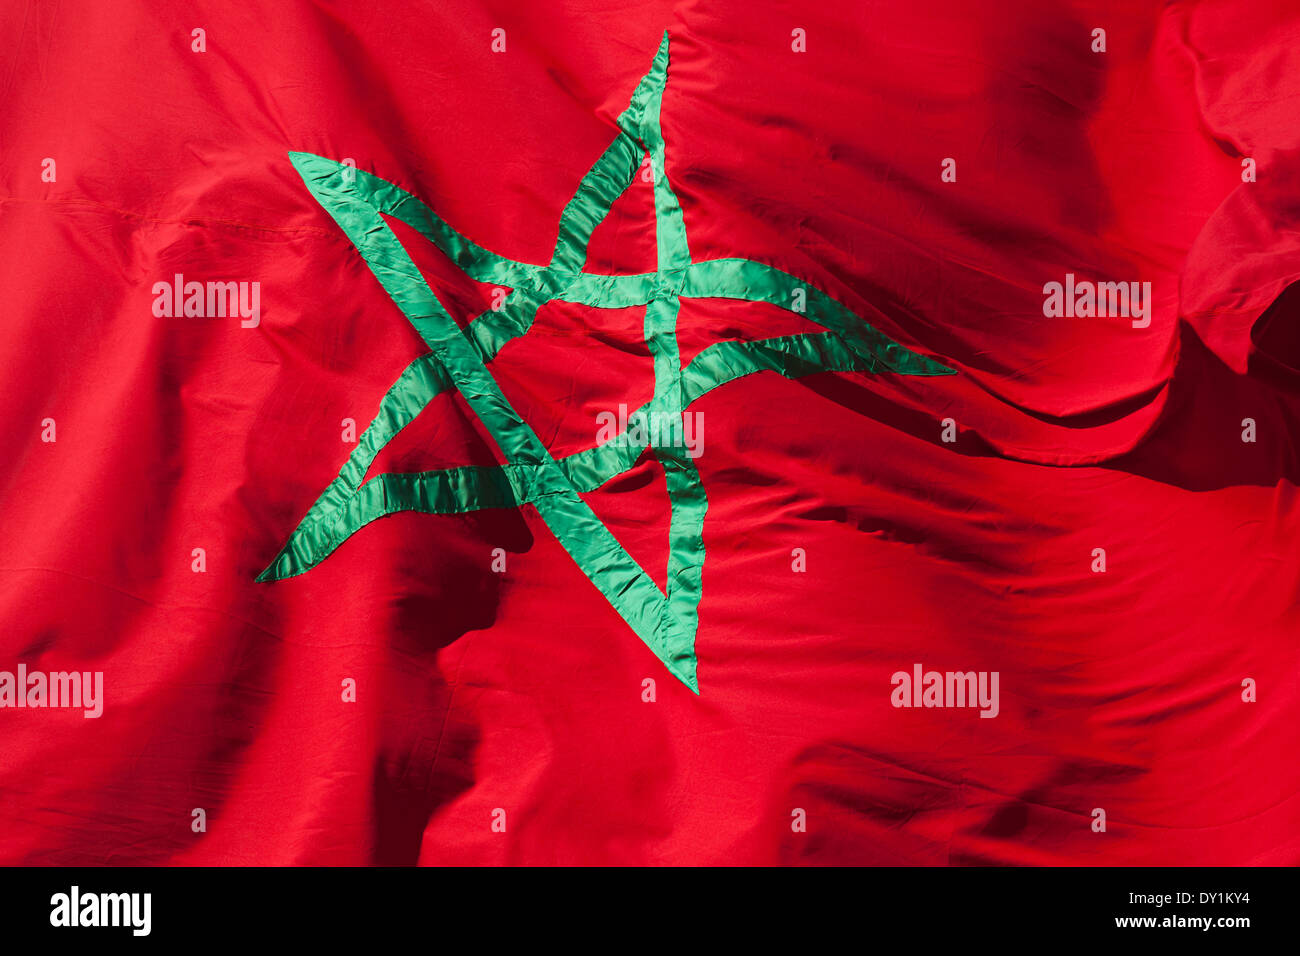 Brandissant le drapeau national du Maroc. Étoile verte sur fond rouge Banque D'Images